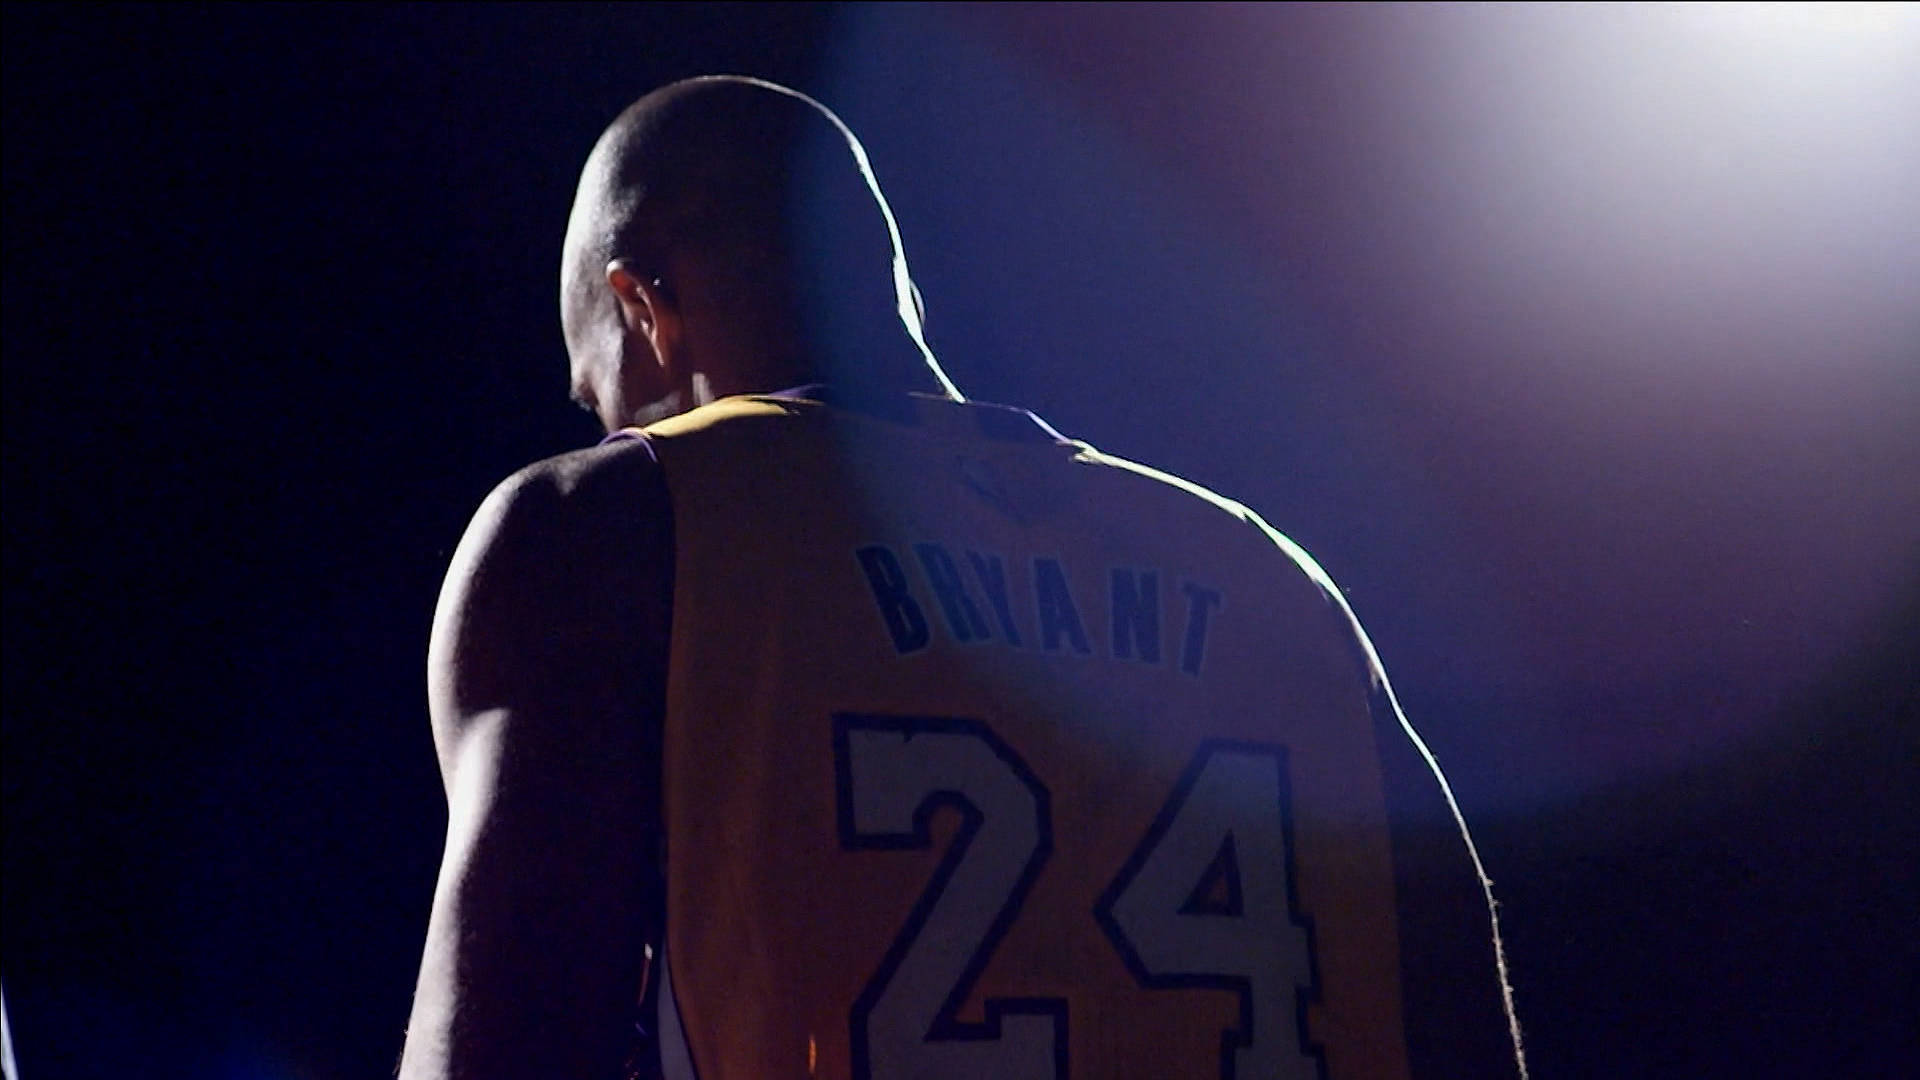 Kobe Bryant shines in the spotlight Wallpaper